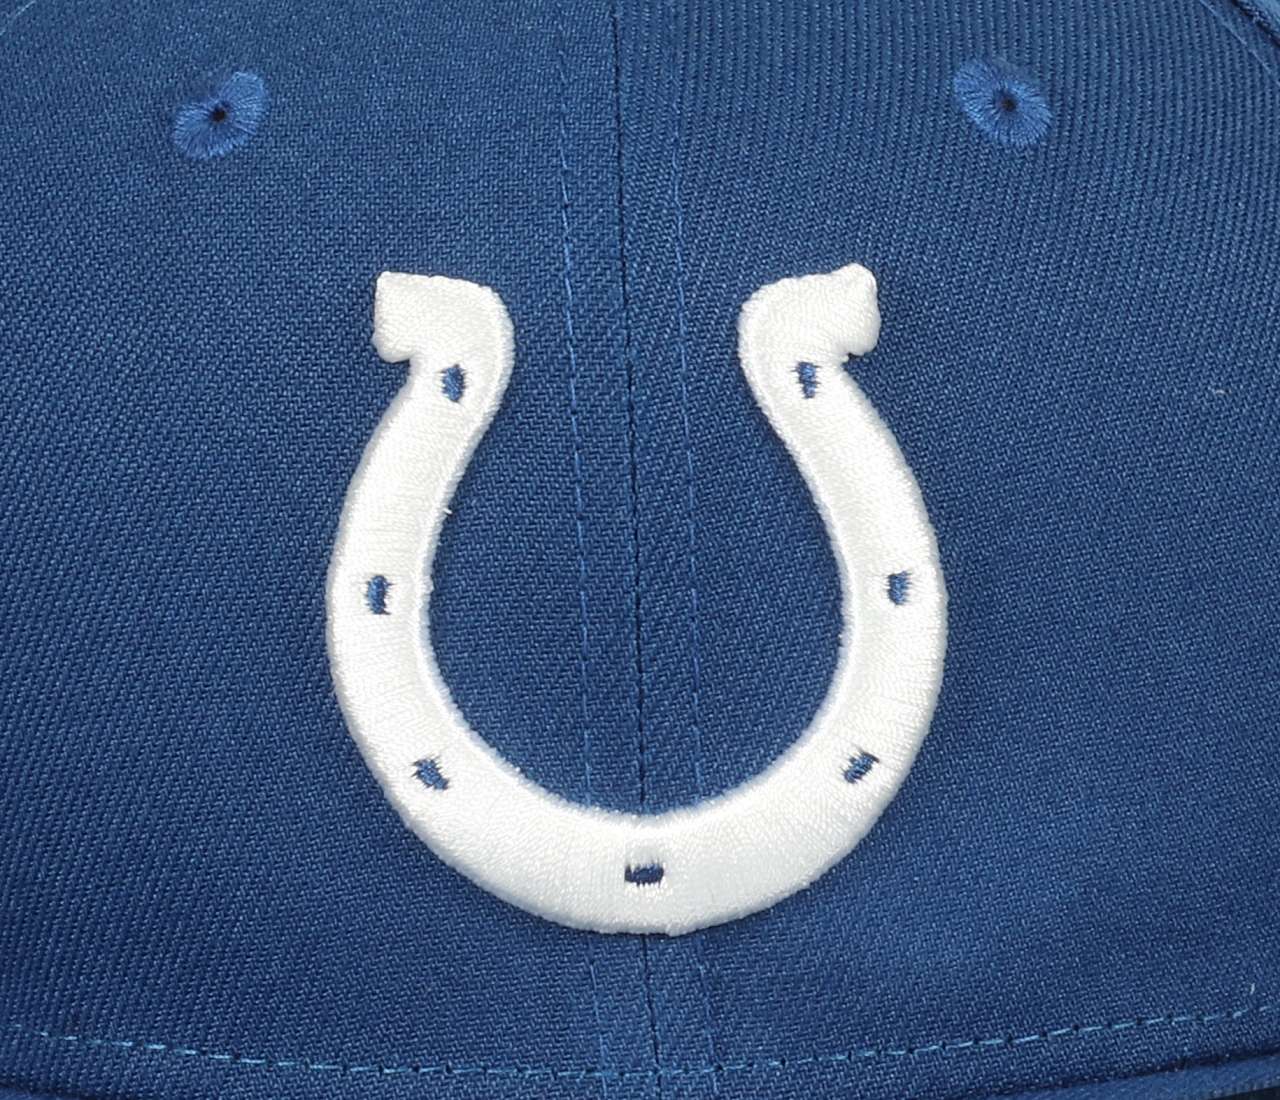 Indianapolis Colts NFL Blue 9Fifty Original Fit Snapback Cap New Era